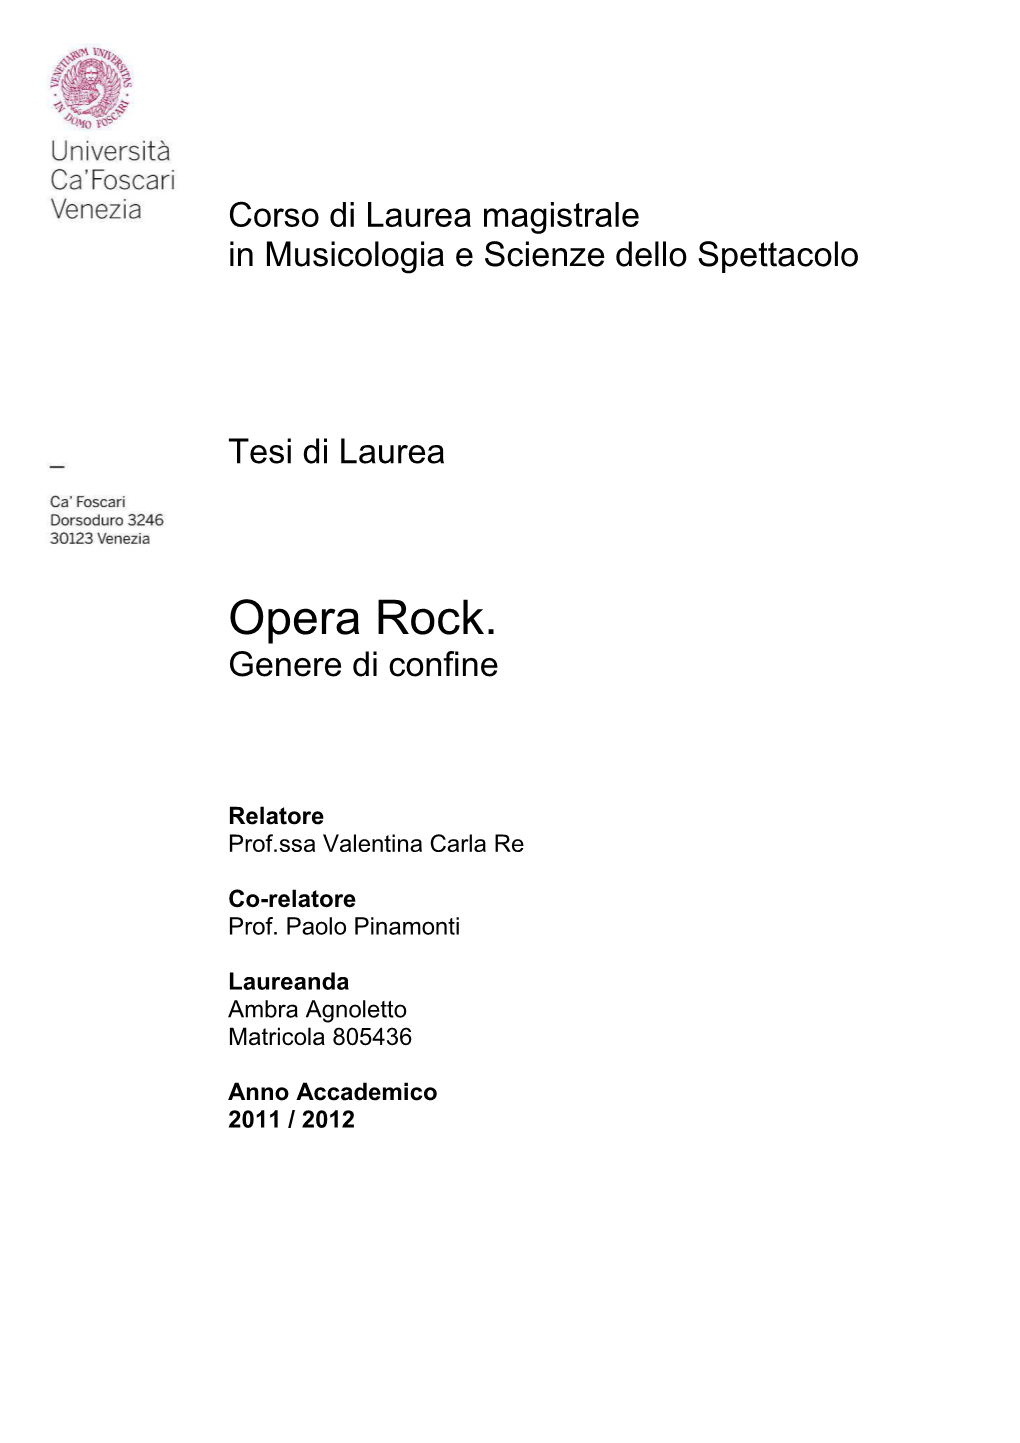 Opera Rock. Genere Di Confine